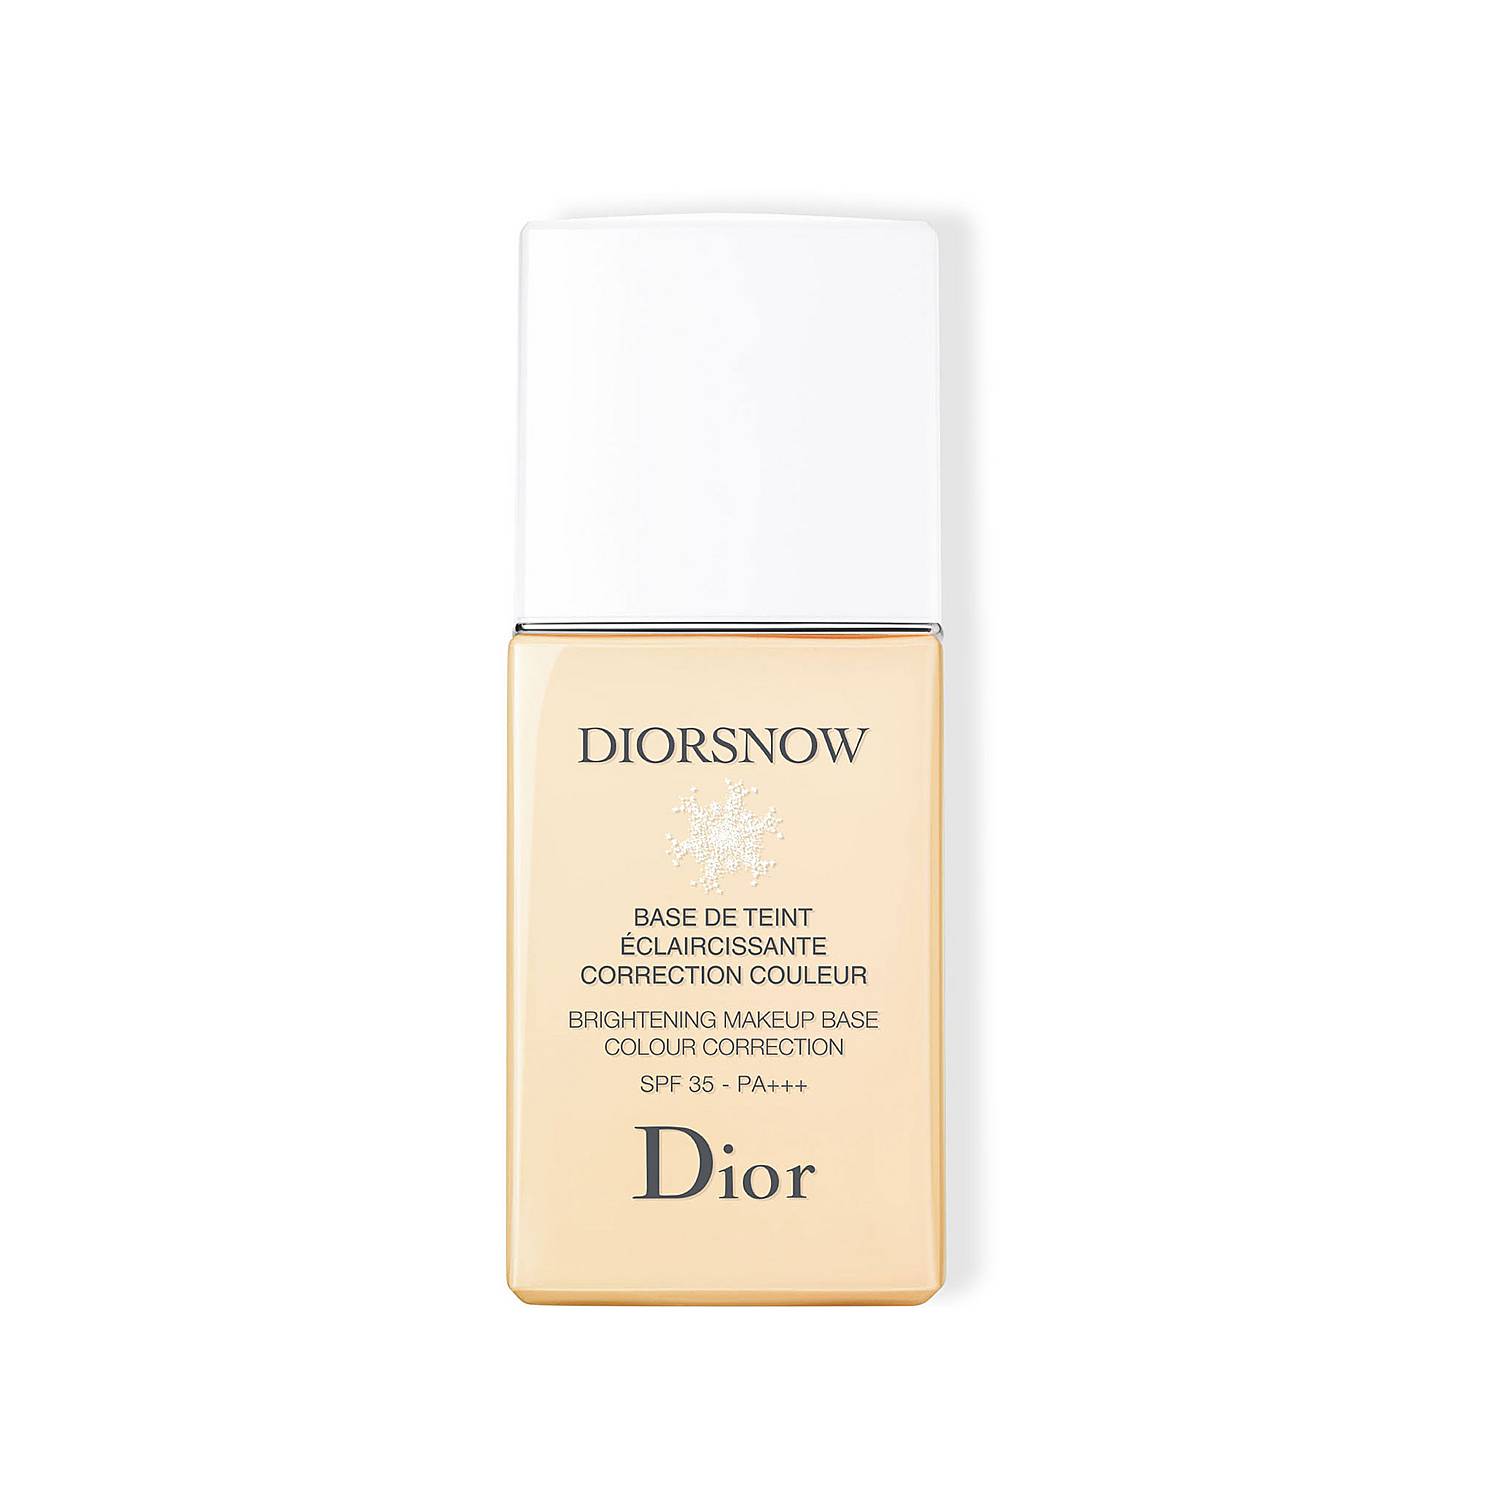 Dior Rozjasňujúca podkladová báza SPF 35 Dior snow (Brightening Make-up Base) 30 ml Rose